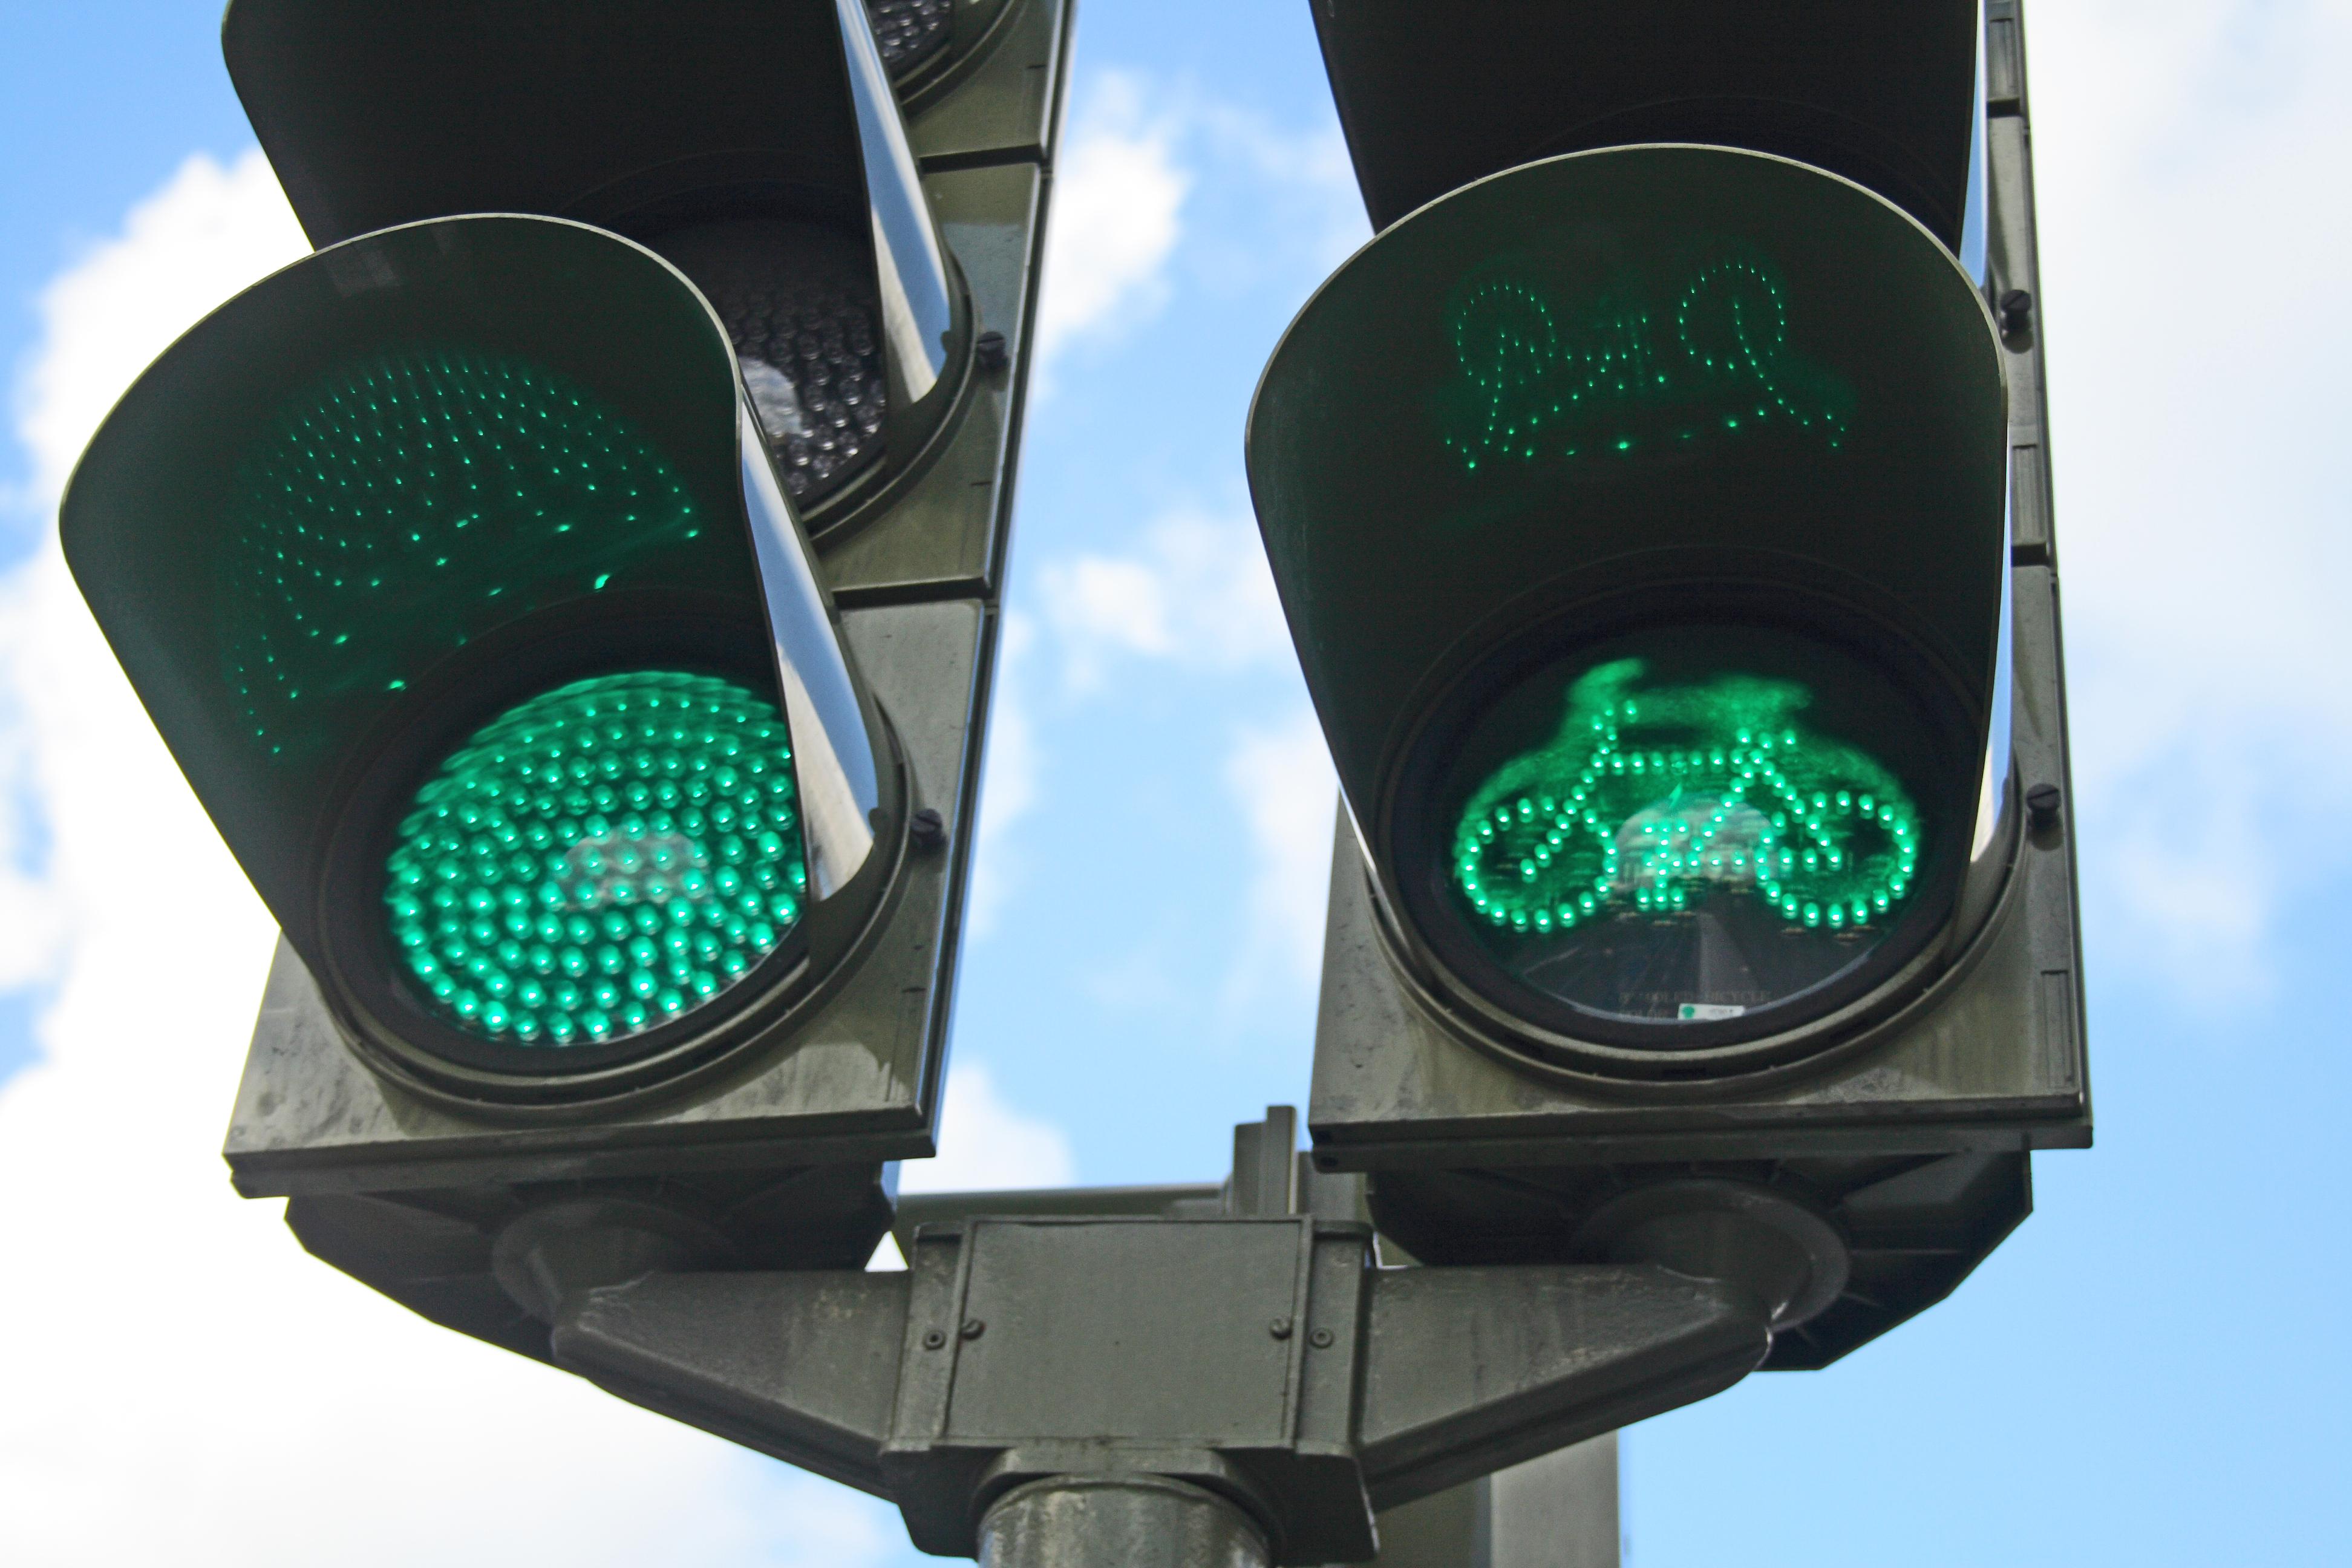 Светофоры всегда зеленые. Зеленый свет. Зеленый сигнал светофора. Зеленый цвет светофора. Зеленый свет светофора.